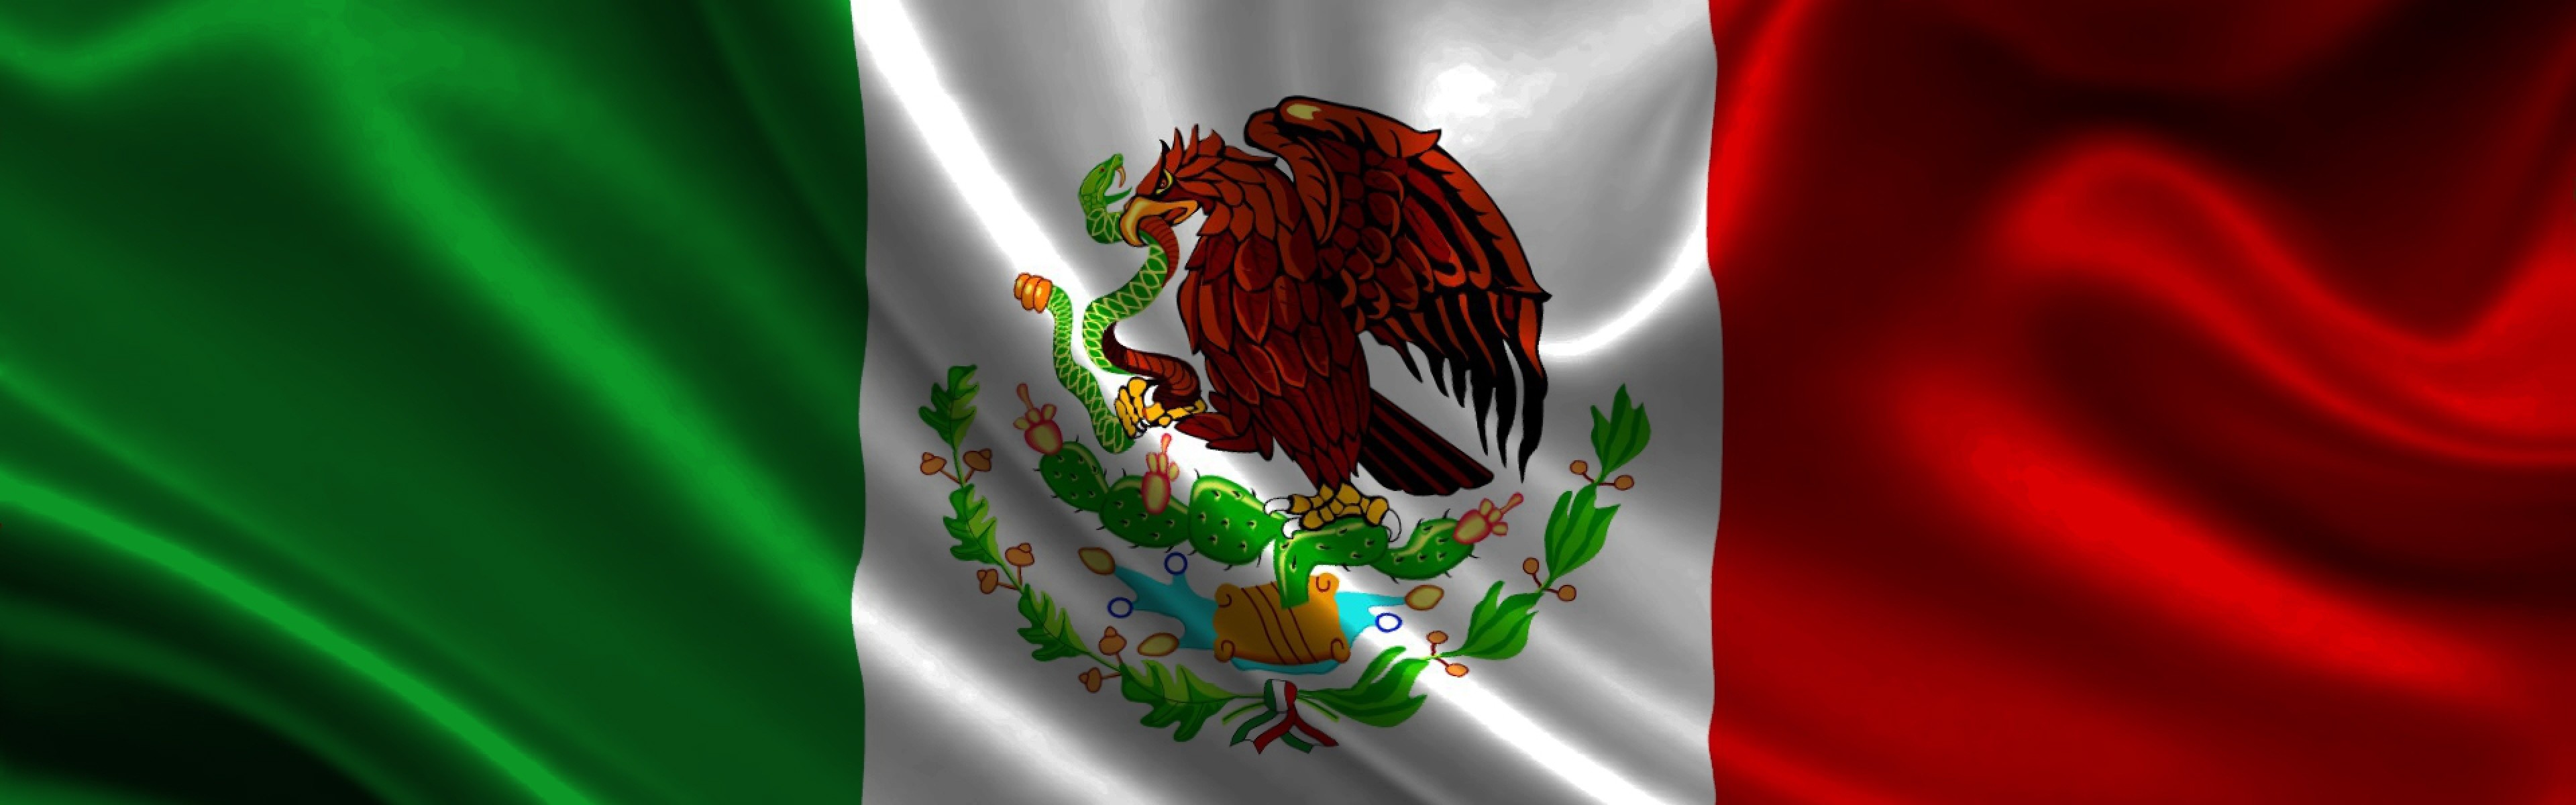 3840x1200 Download Wallpaper  Mexico, atlas, Flag, Symbol, Emblem